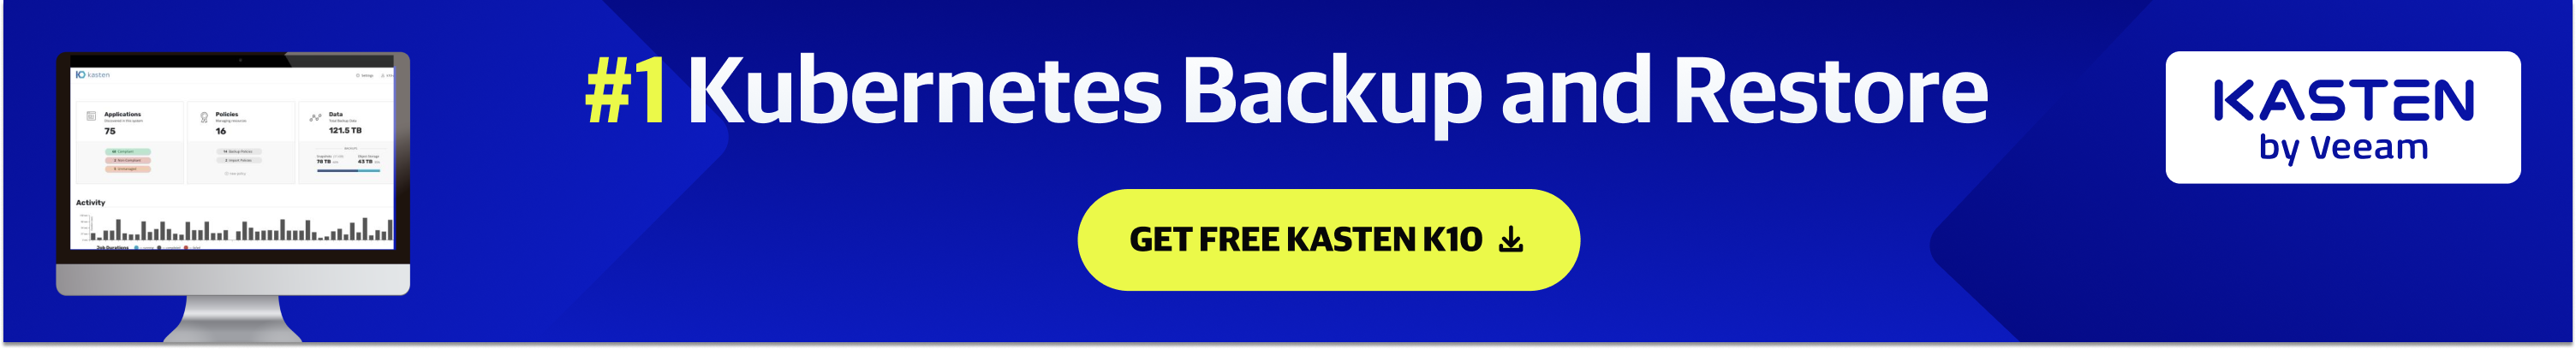 get-free-kasten-k10-banner-kubernetes-backup-restore